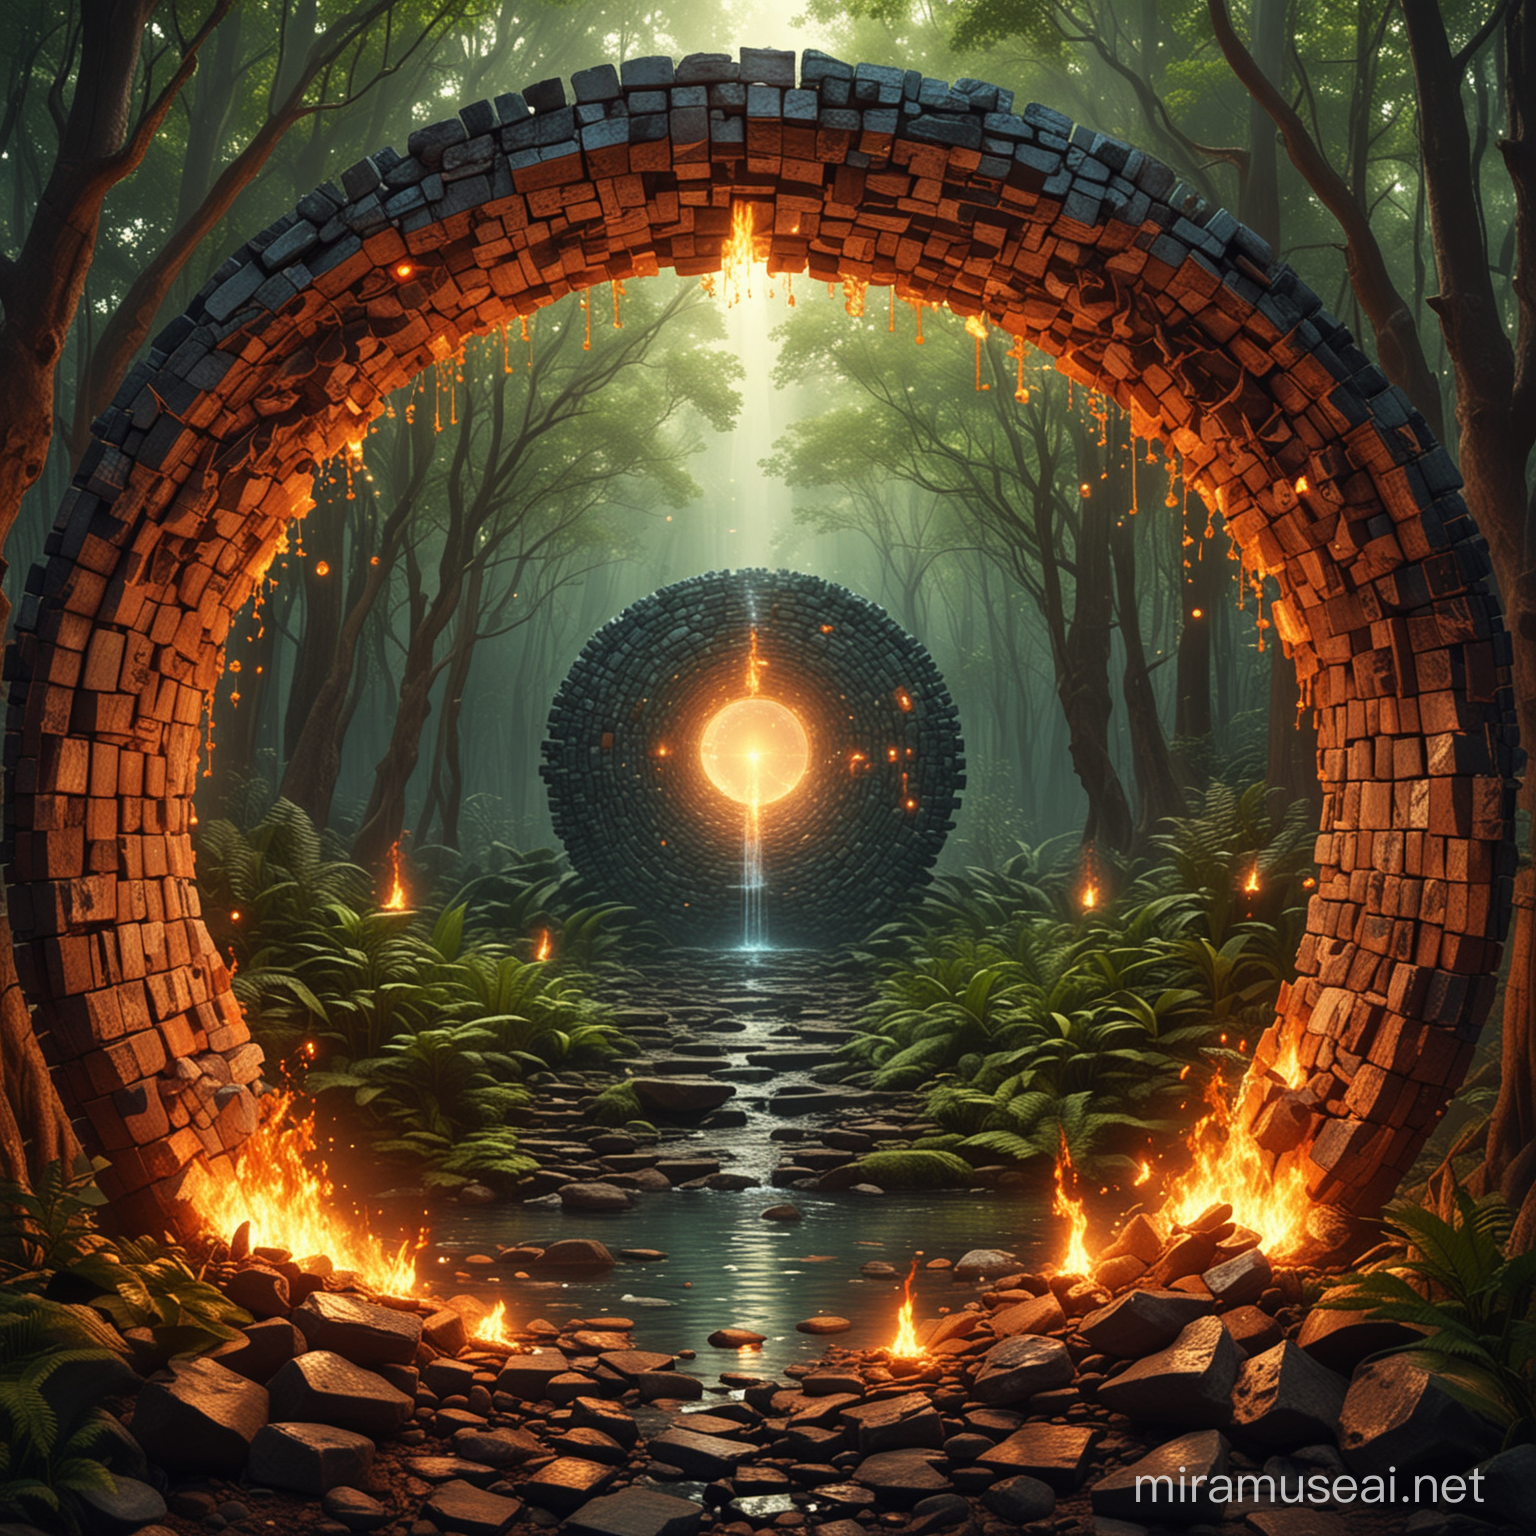 Mundo visionário psicodélico com formas geométricas de tijolos 3D mais detalhadas, movimentos de floresta, lâmpada de chama, movimentos de lagarto, túnel, rosto pequeno xamânico mesclado com queda de água. Círculo de fogo.